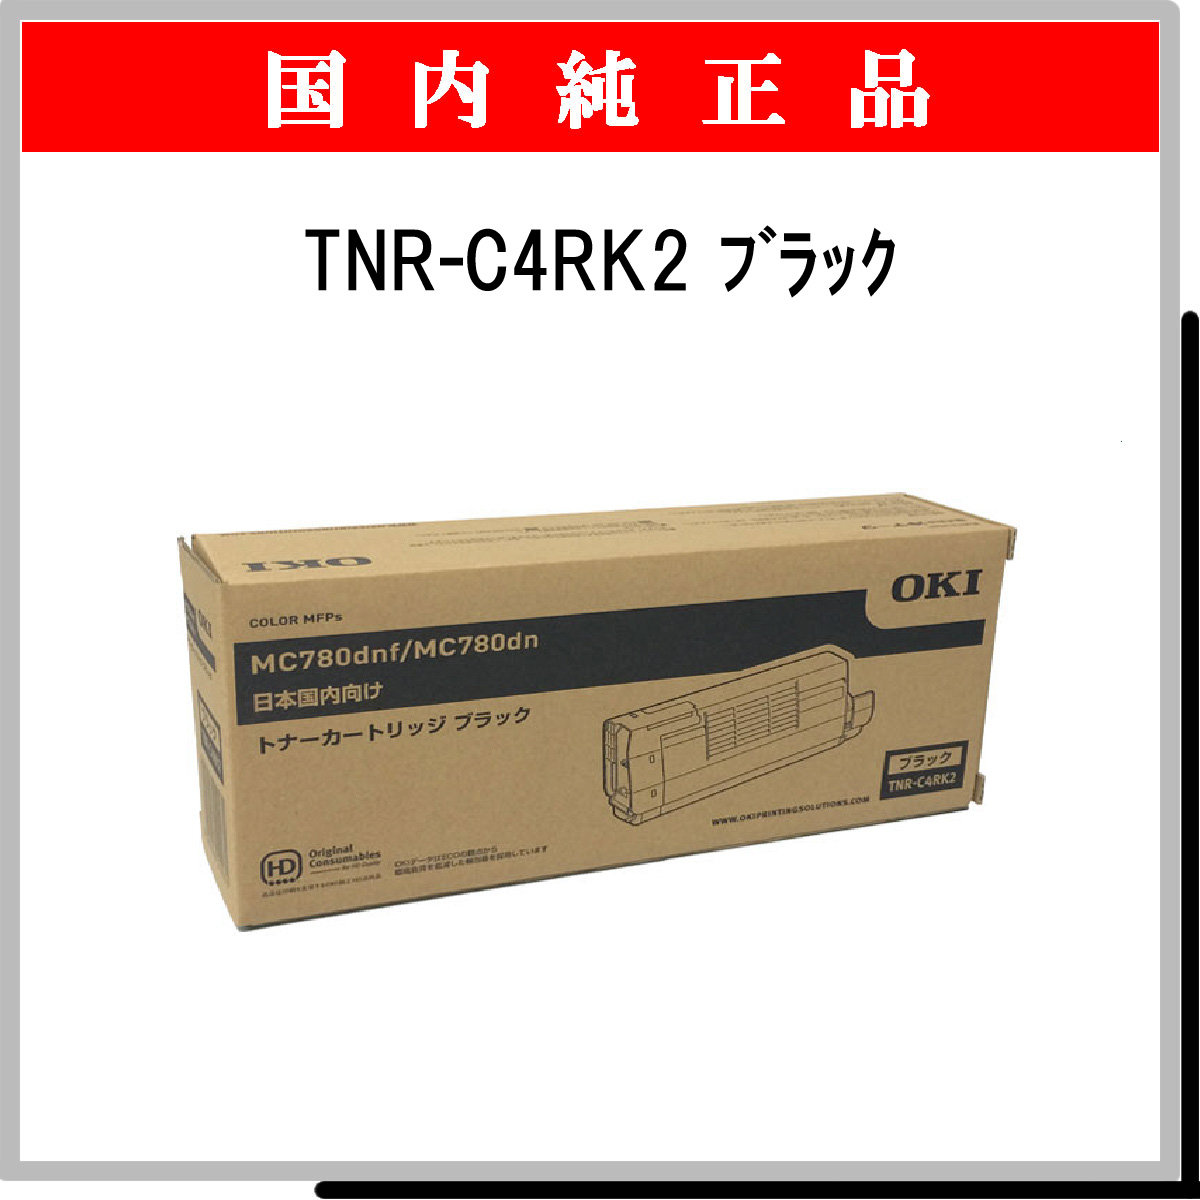 TNR-C4RK2 純正